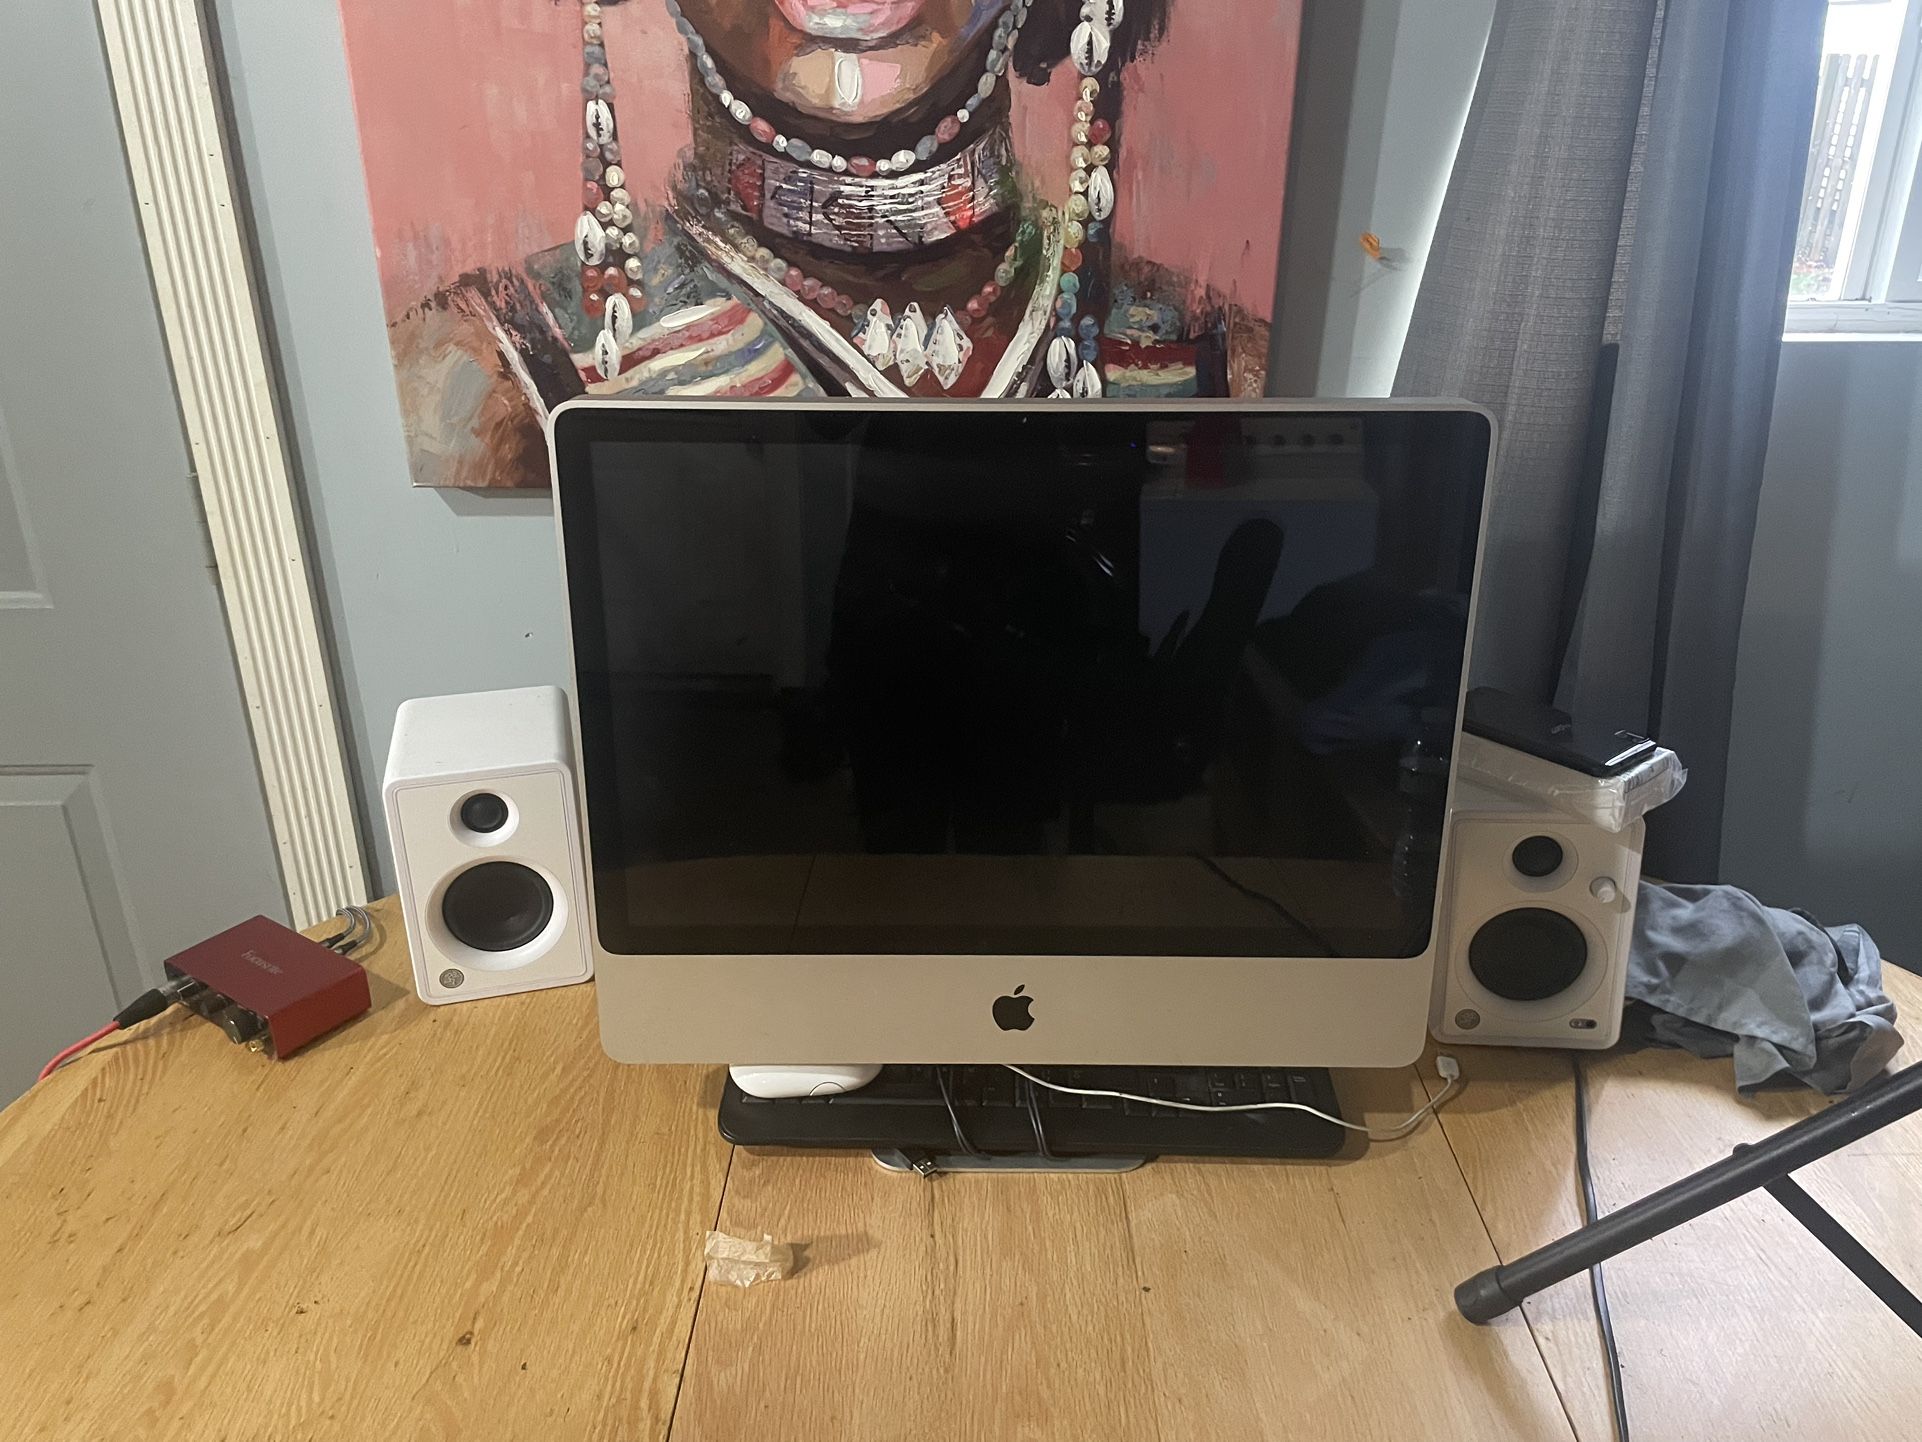 MacBook Desktop